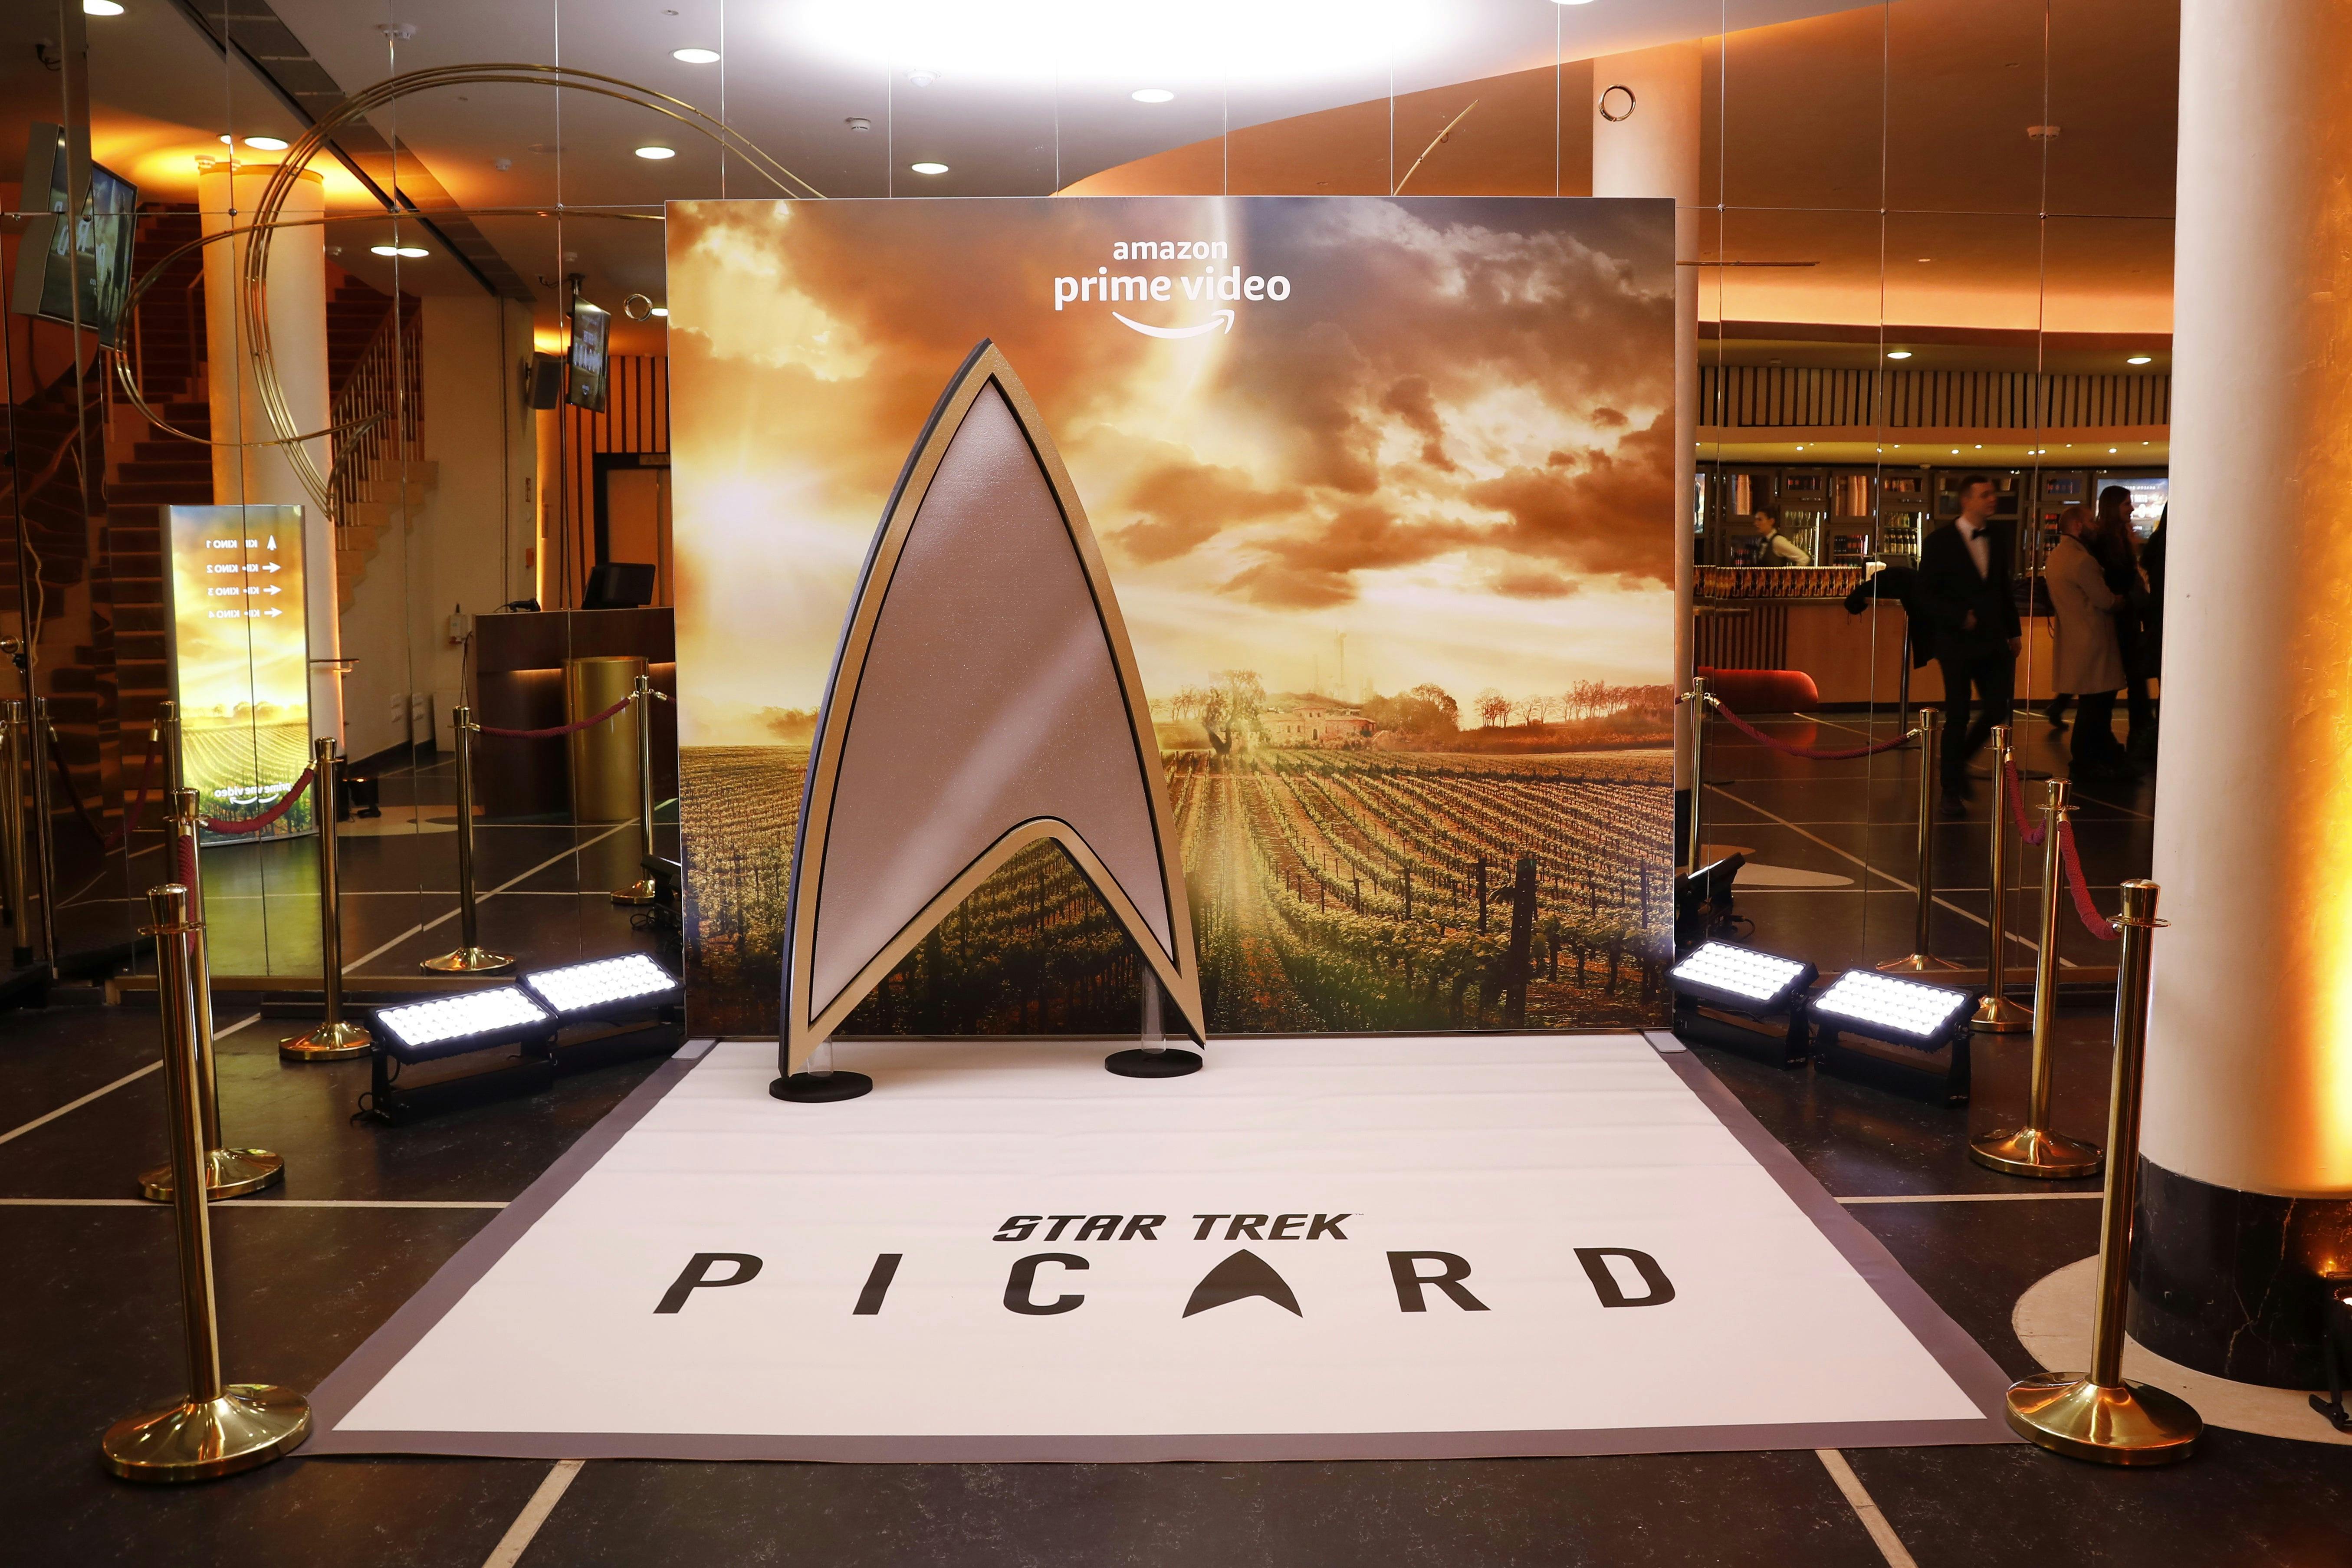 Star Trek: Picard Arrives in Berlin